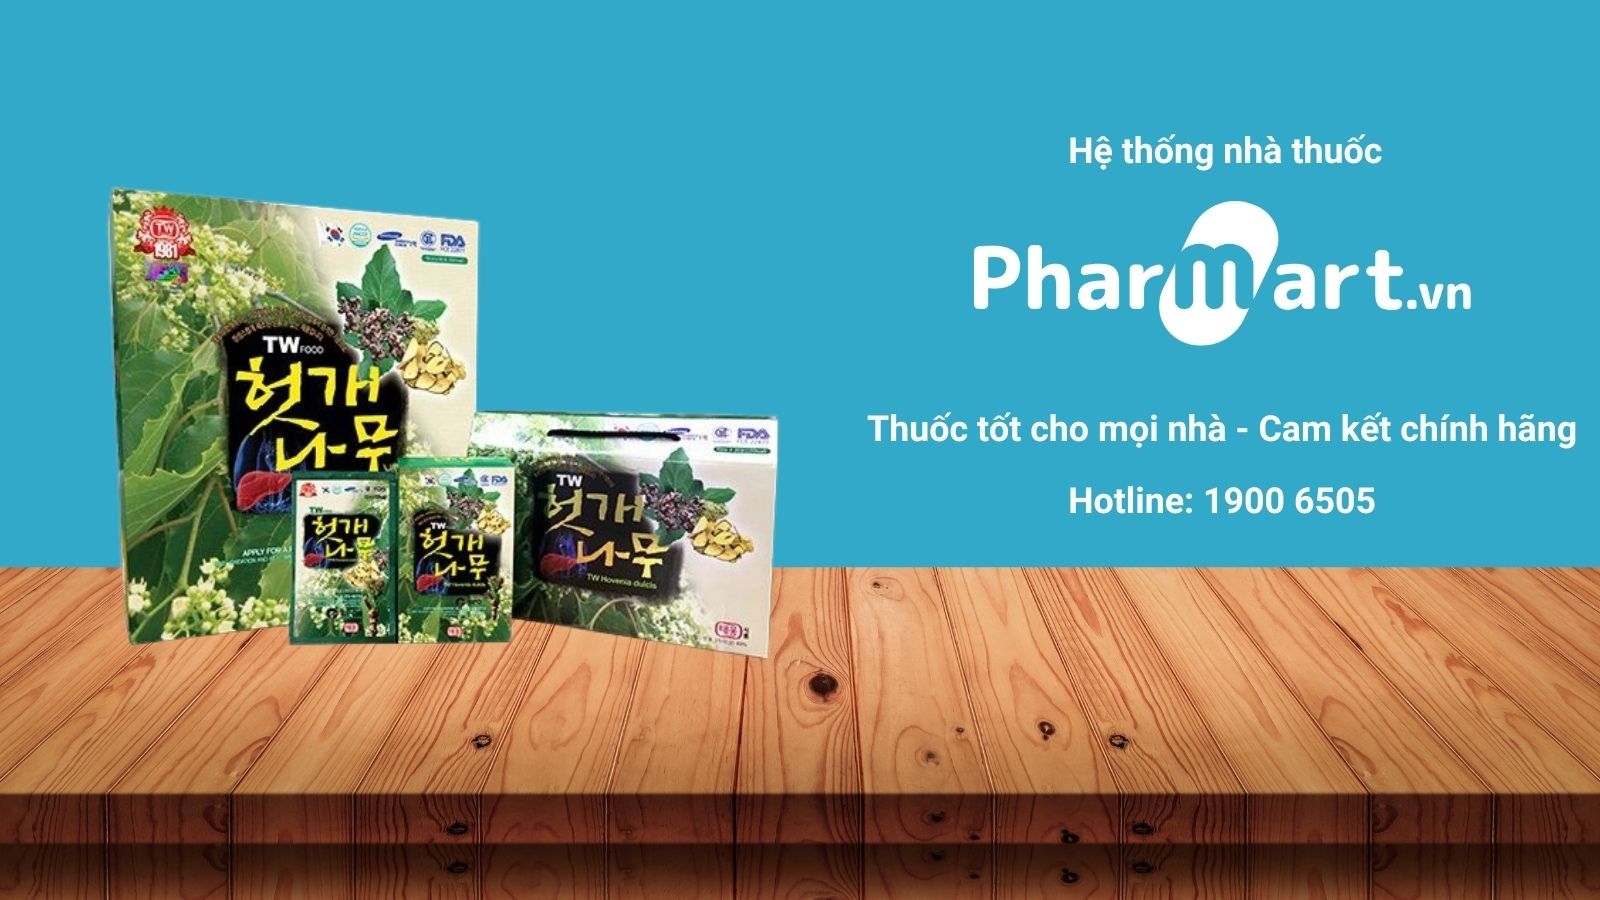 Mua ngay Nước bổ gan TW Hovenia Dulcis chính hãng tại Pharmart.vn